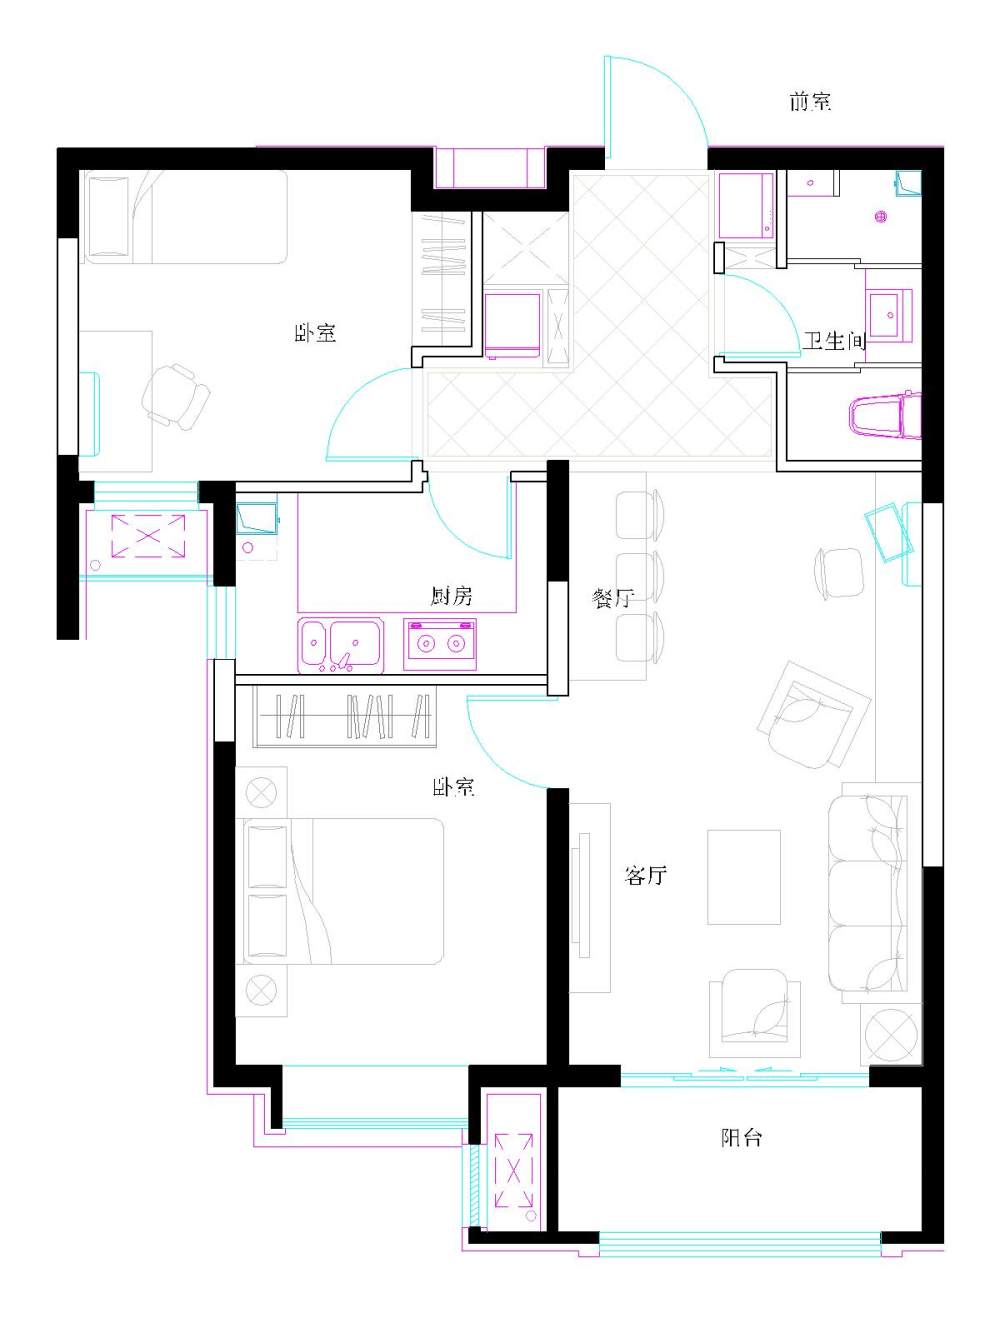 两室一厅小户型方案救助_3#1002_t3-Model.jpg